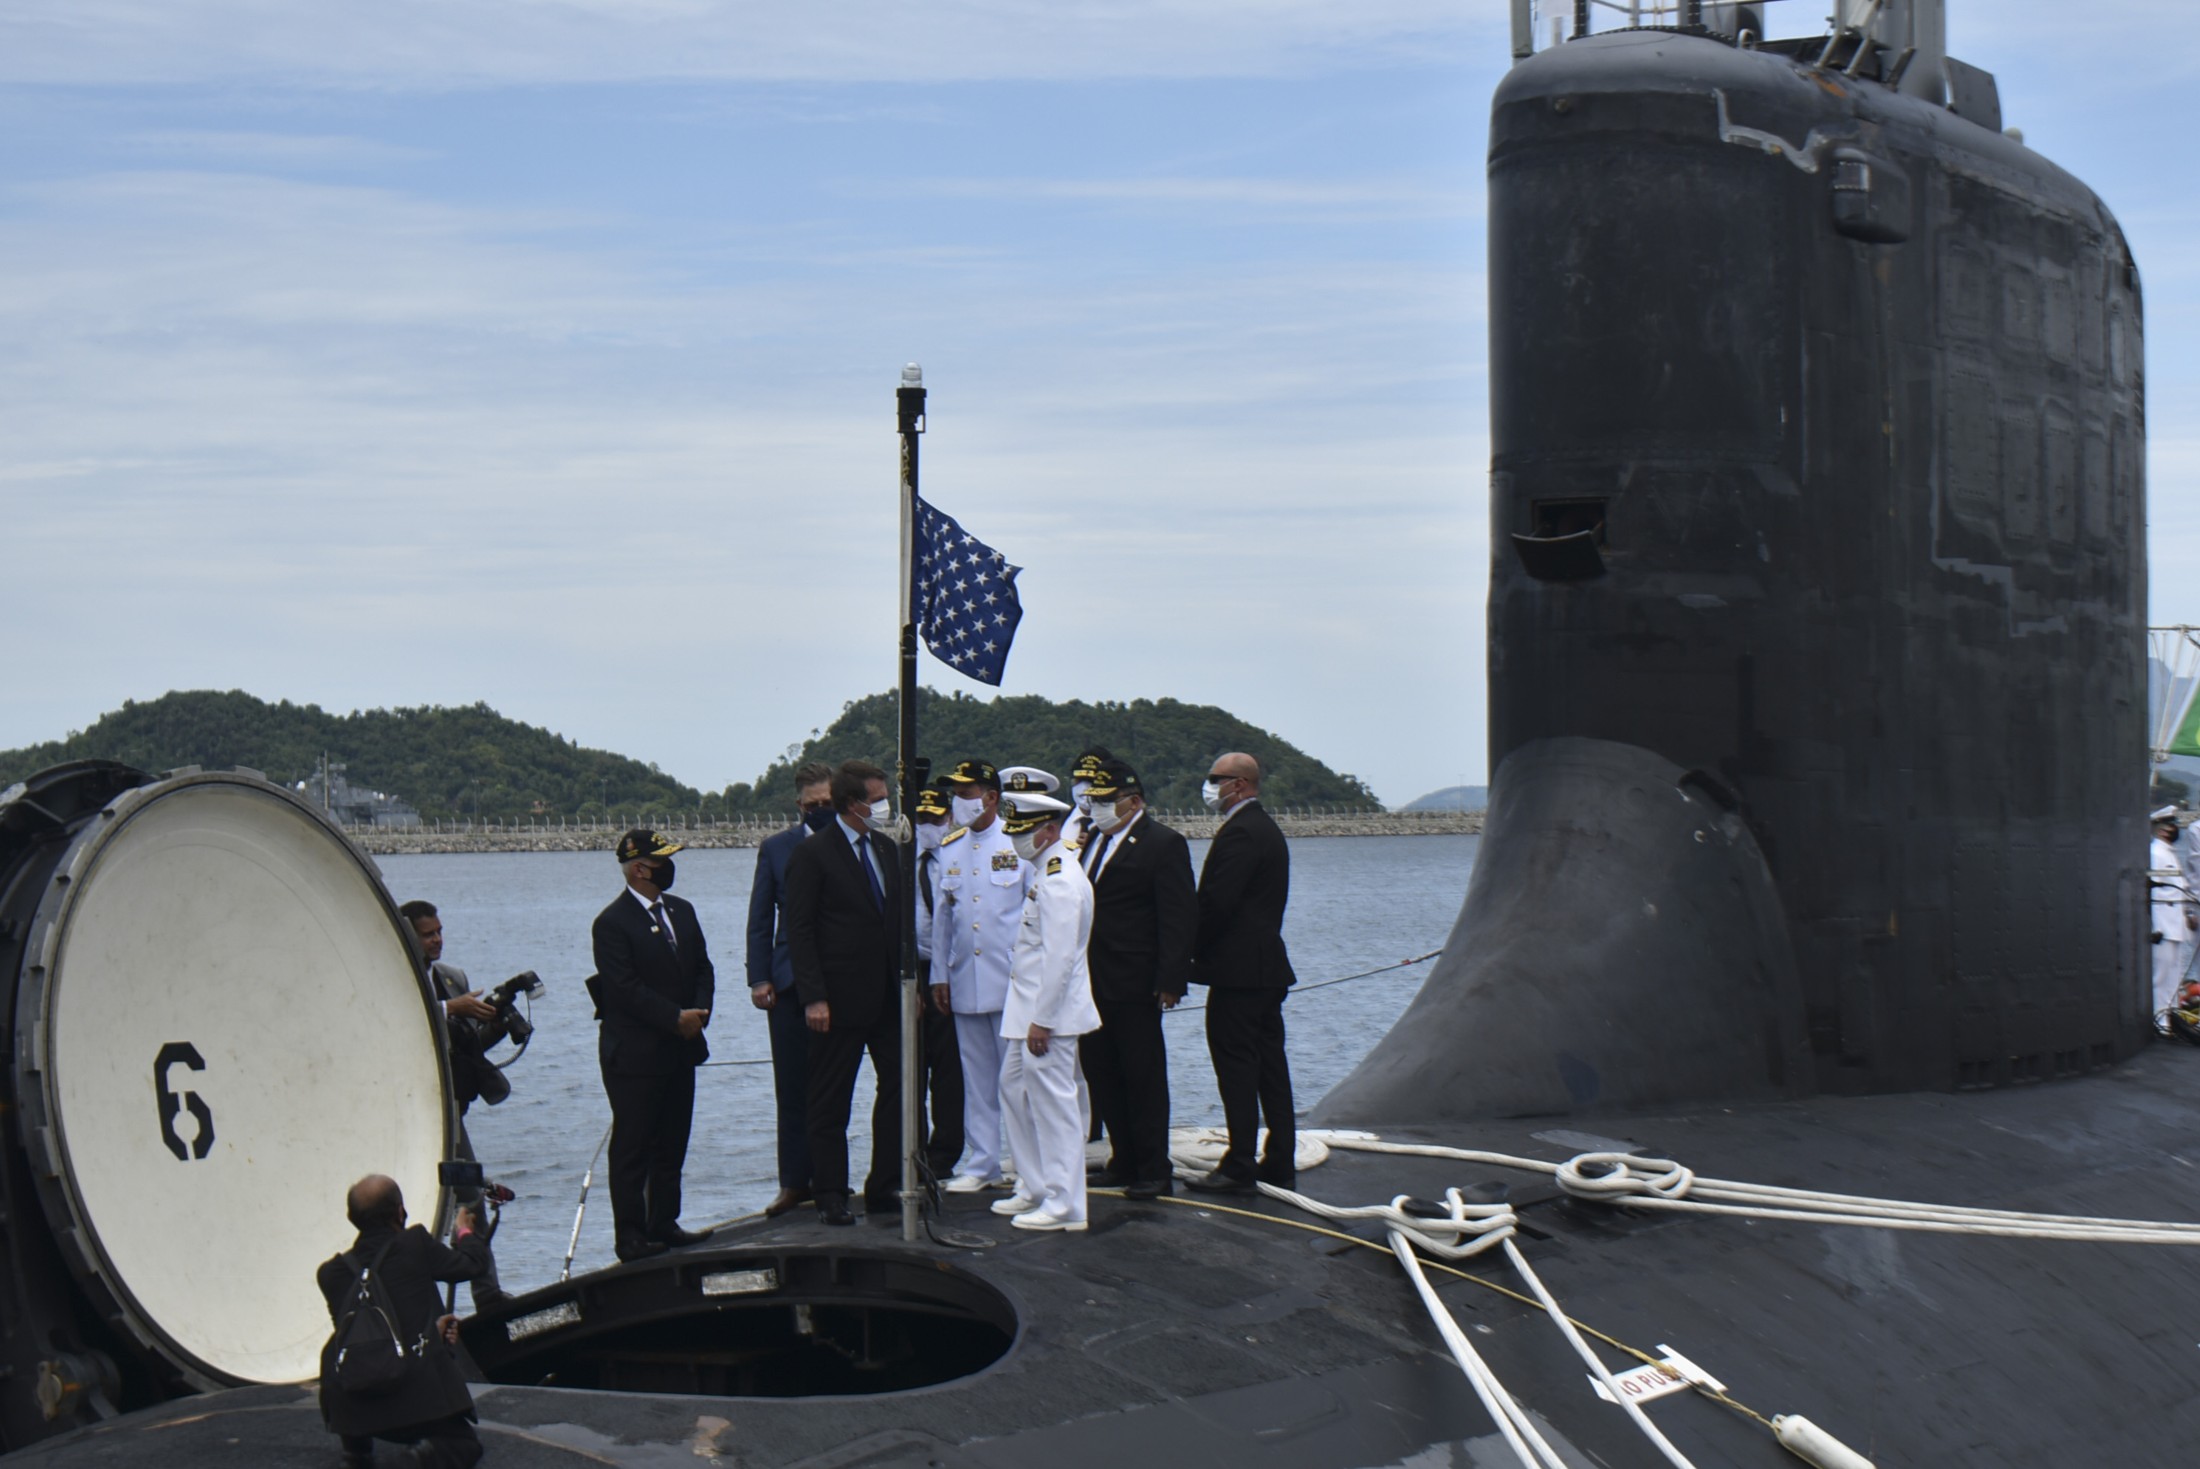 ssn-792 uss vermont virginia class attack submarine us navy 09 rio de janeiro brazil